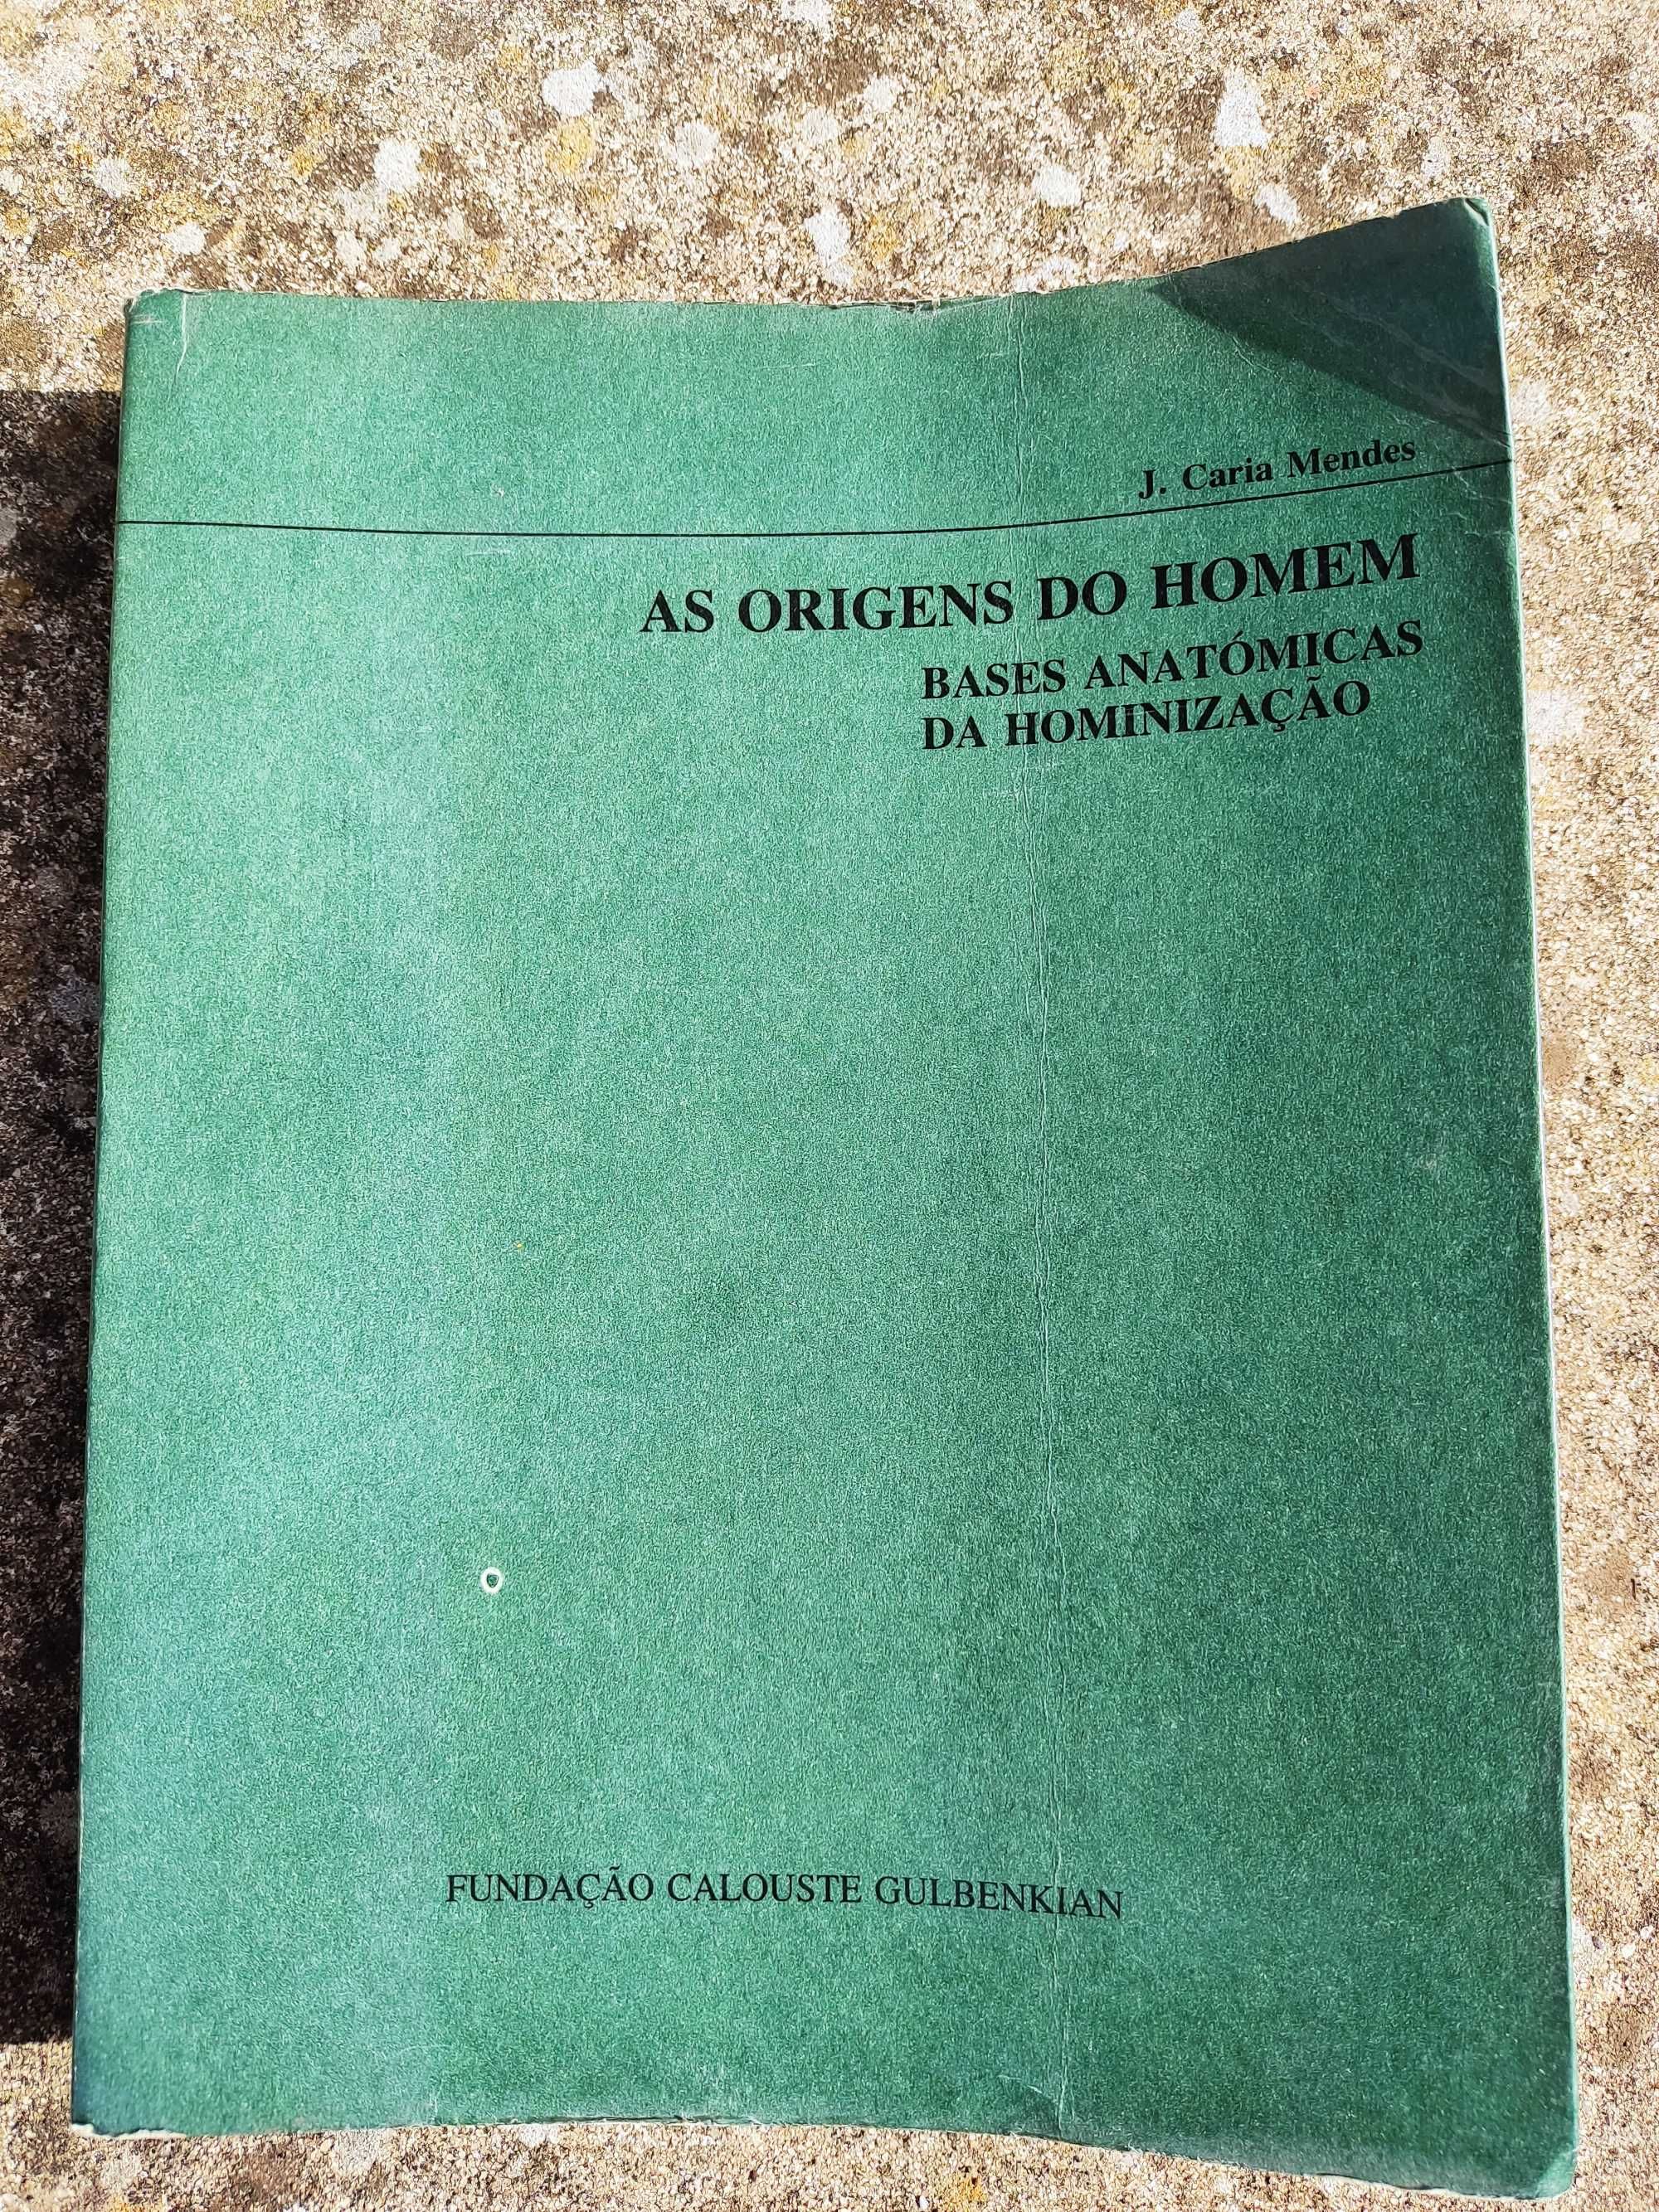 As origens do homem - bases anatómicas da hominização, J. Caria Mendes